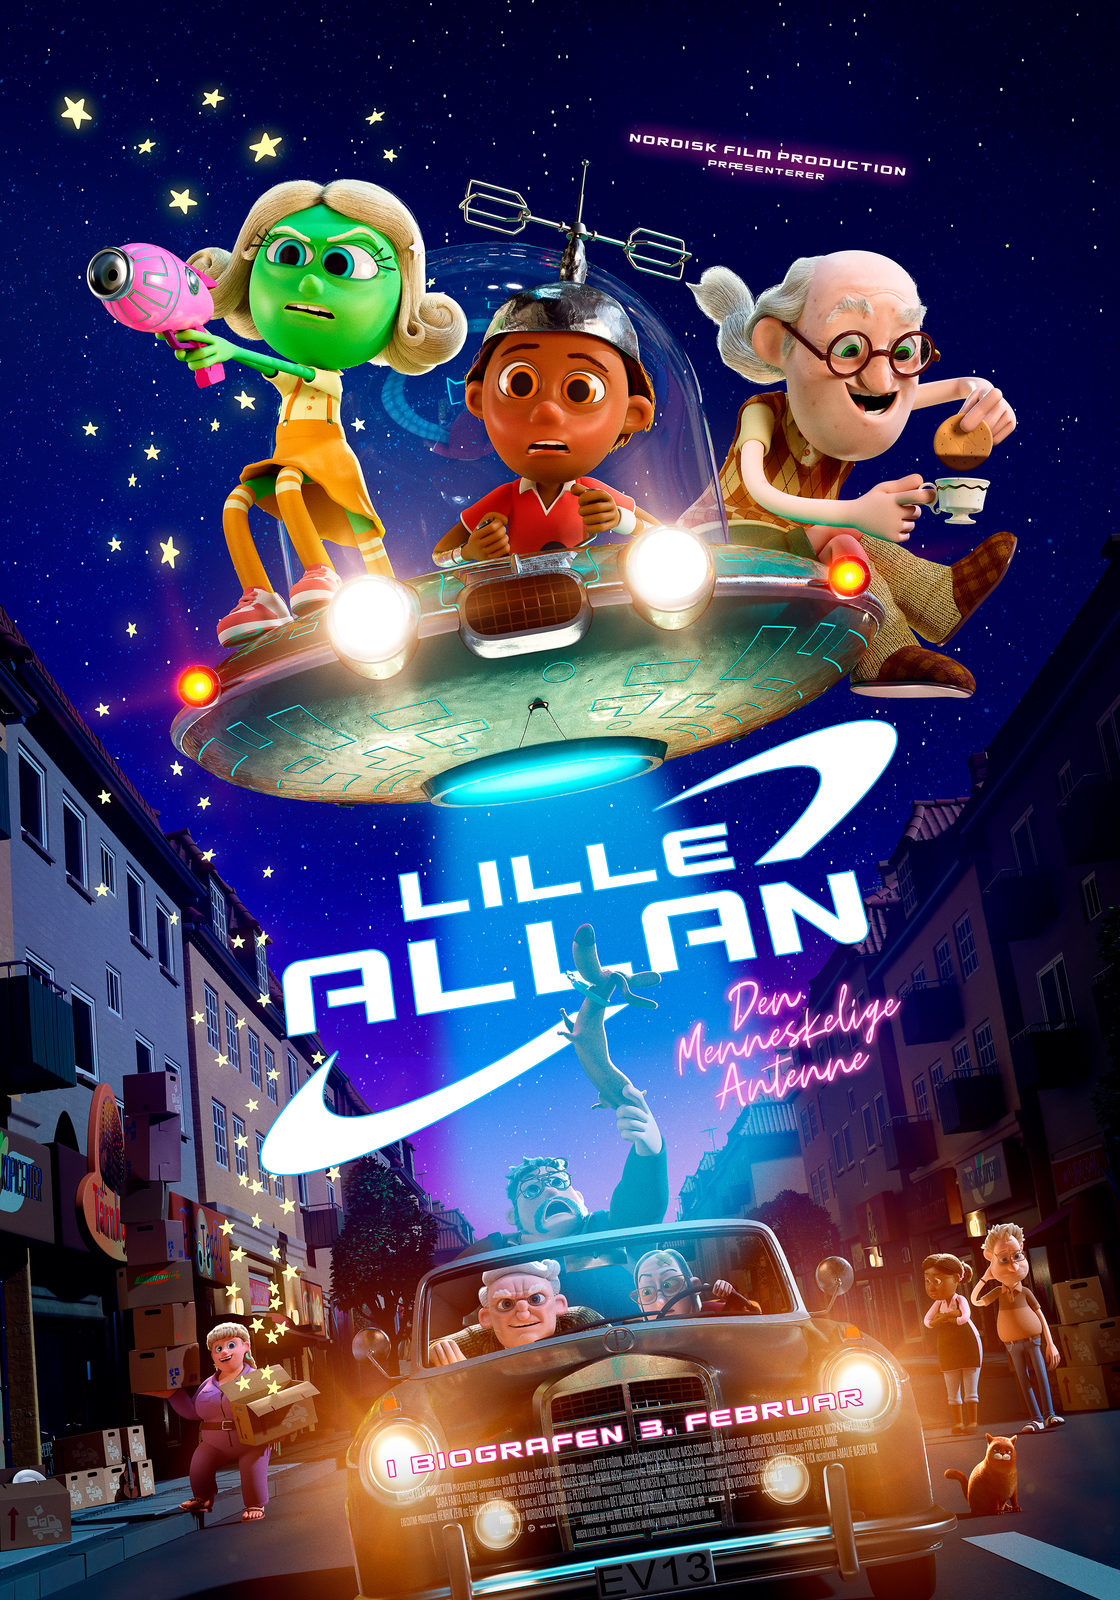 Little Allan - The Human Antenna (2022)